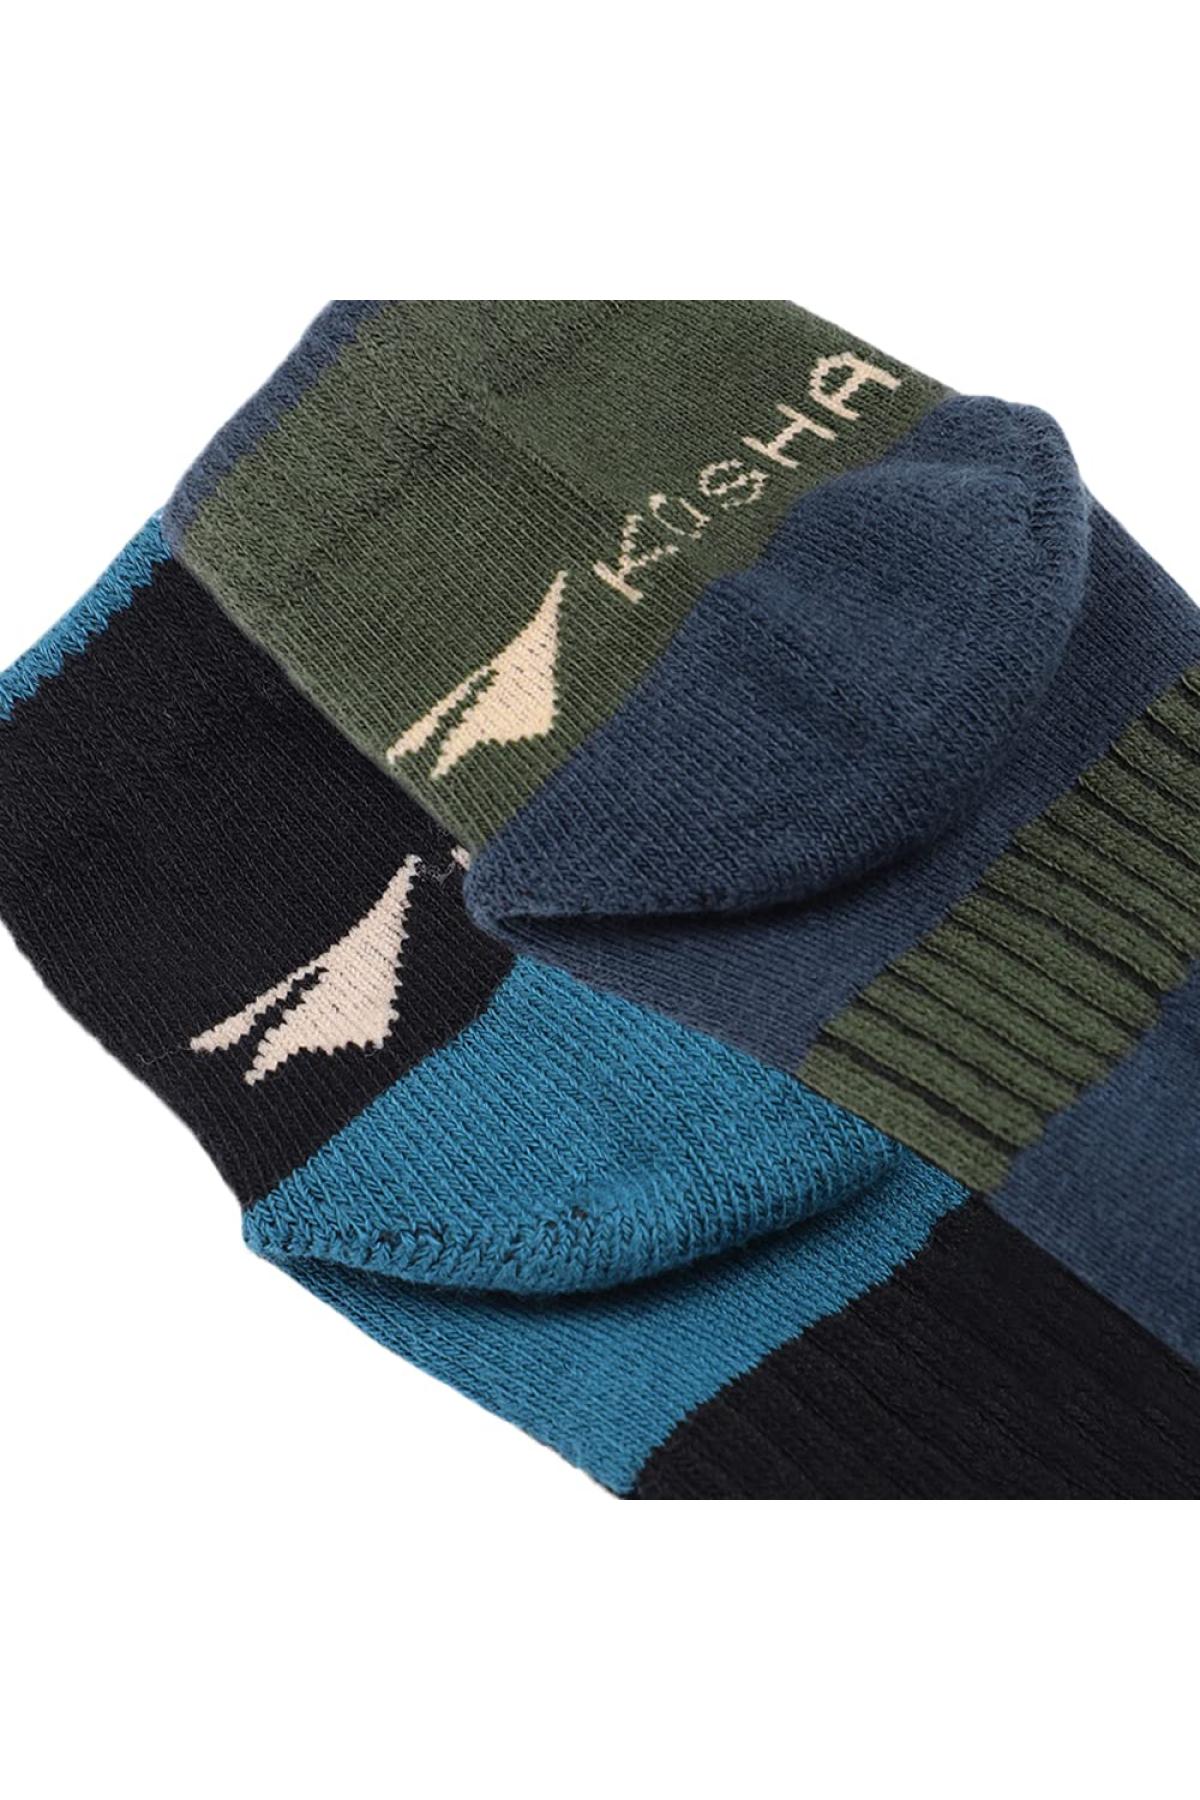 Assorted Ankle Length Cotton Socks | Men Buy 3 Get 6